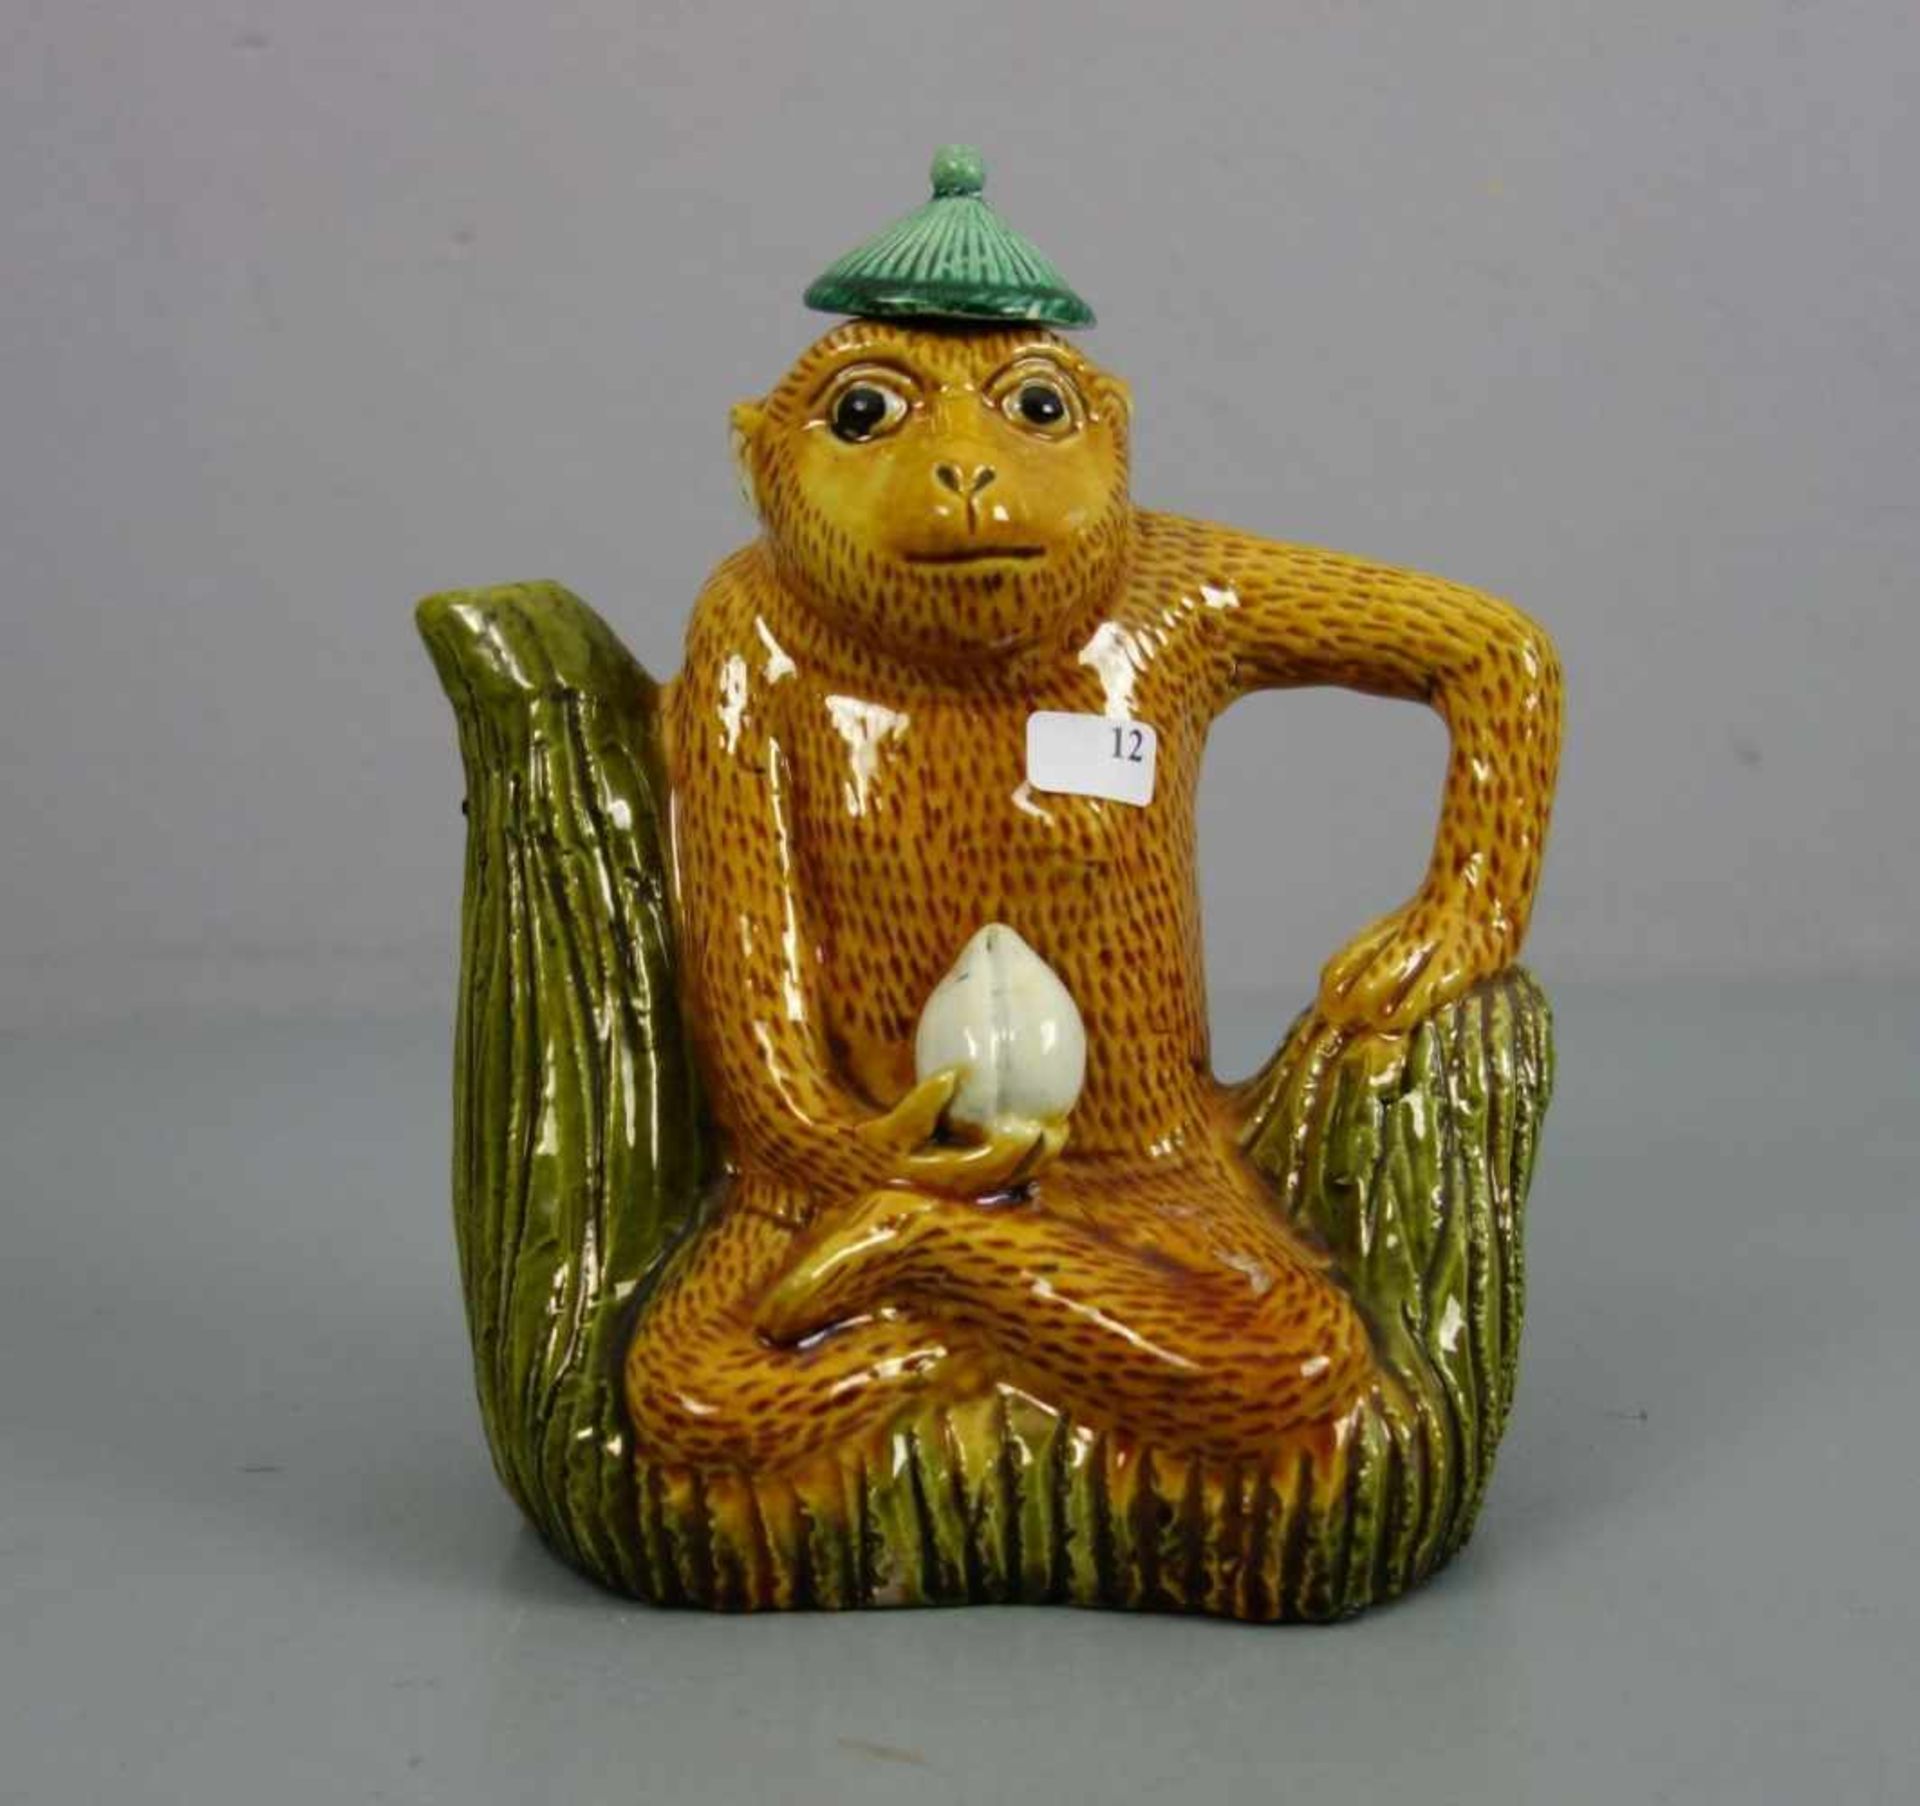 FIGÜRLICHE WEINKANNE / TEEKANNE: "Sitzender Affe" / biscuit wine pot with monkey, China, heller